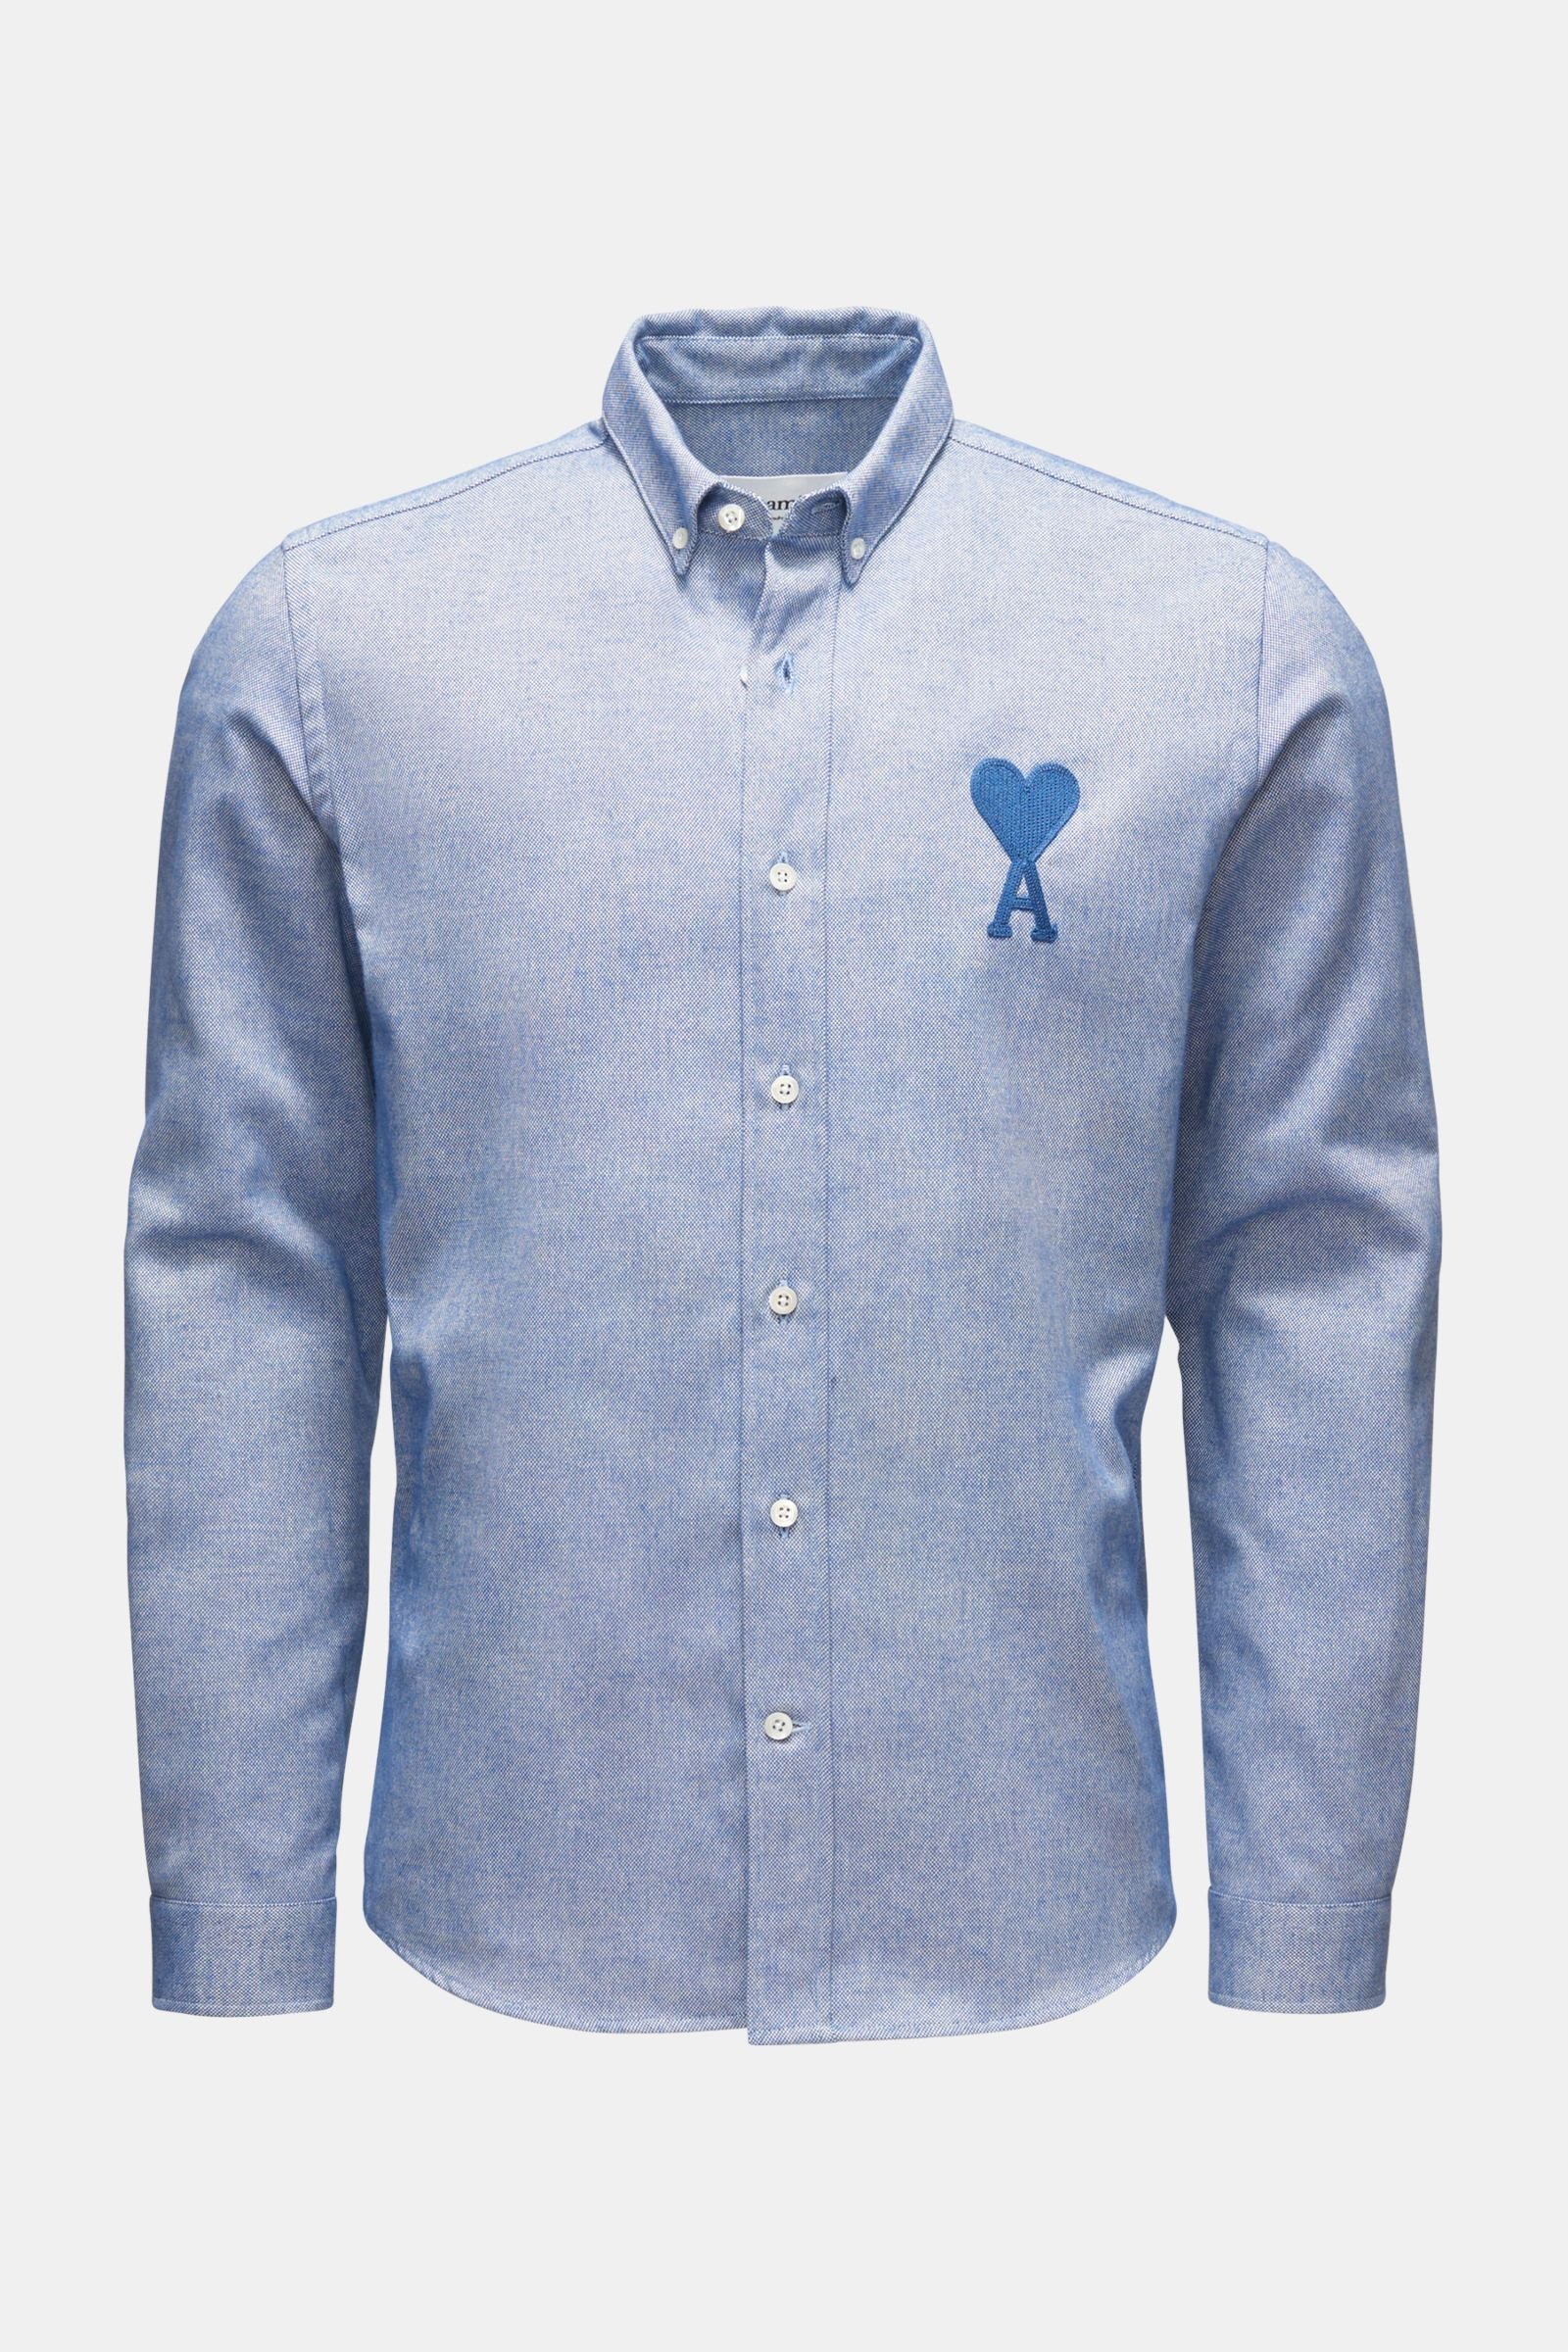 Oxford shirt button-down collar smoky blue